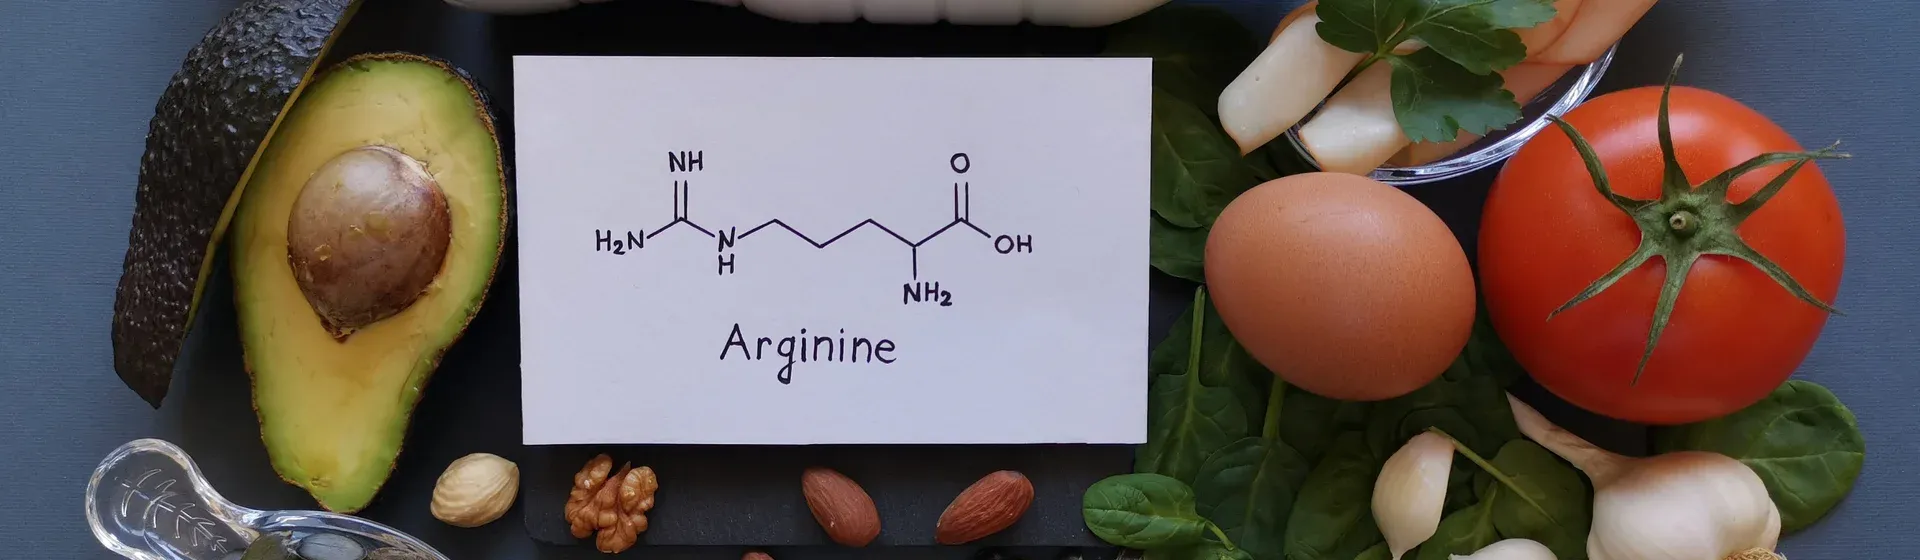 Alimentos que possuem boas fontes de arginina